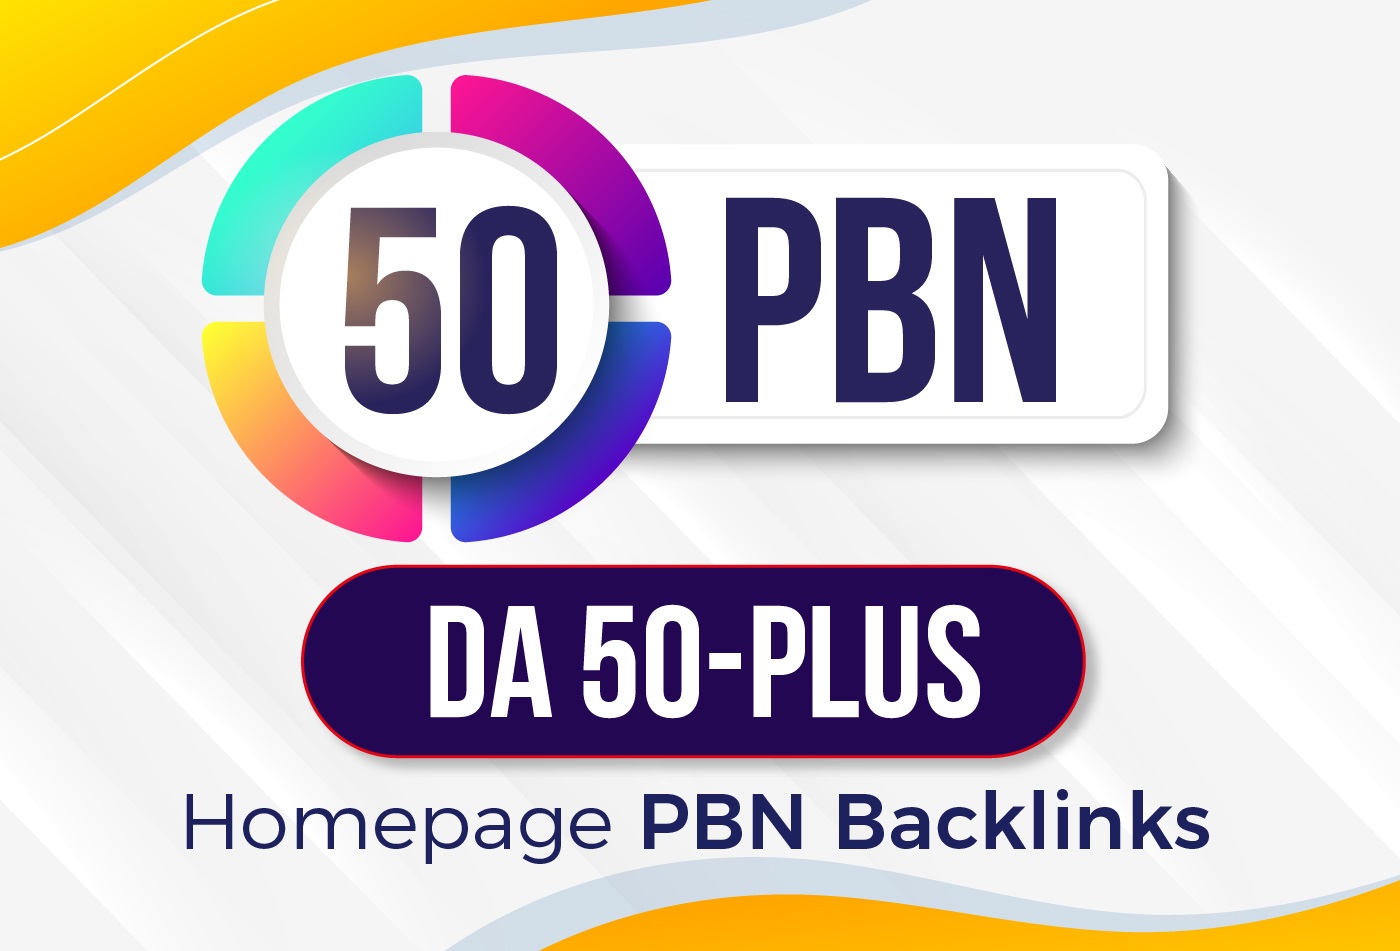 Build, All DA50+ High Quality 50 PBN Backlinks, To Website Improving